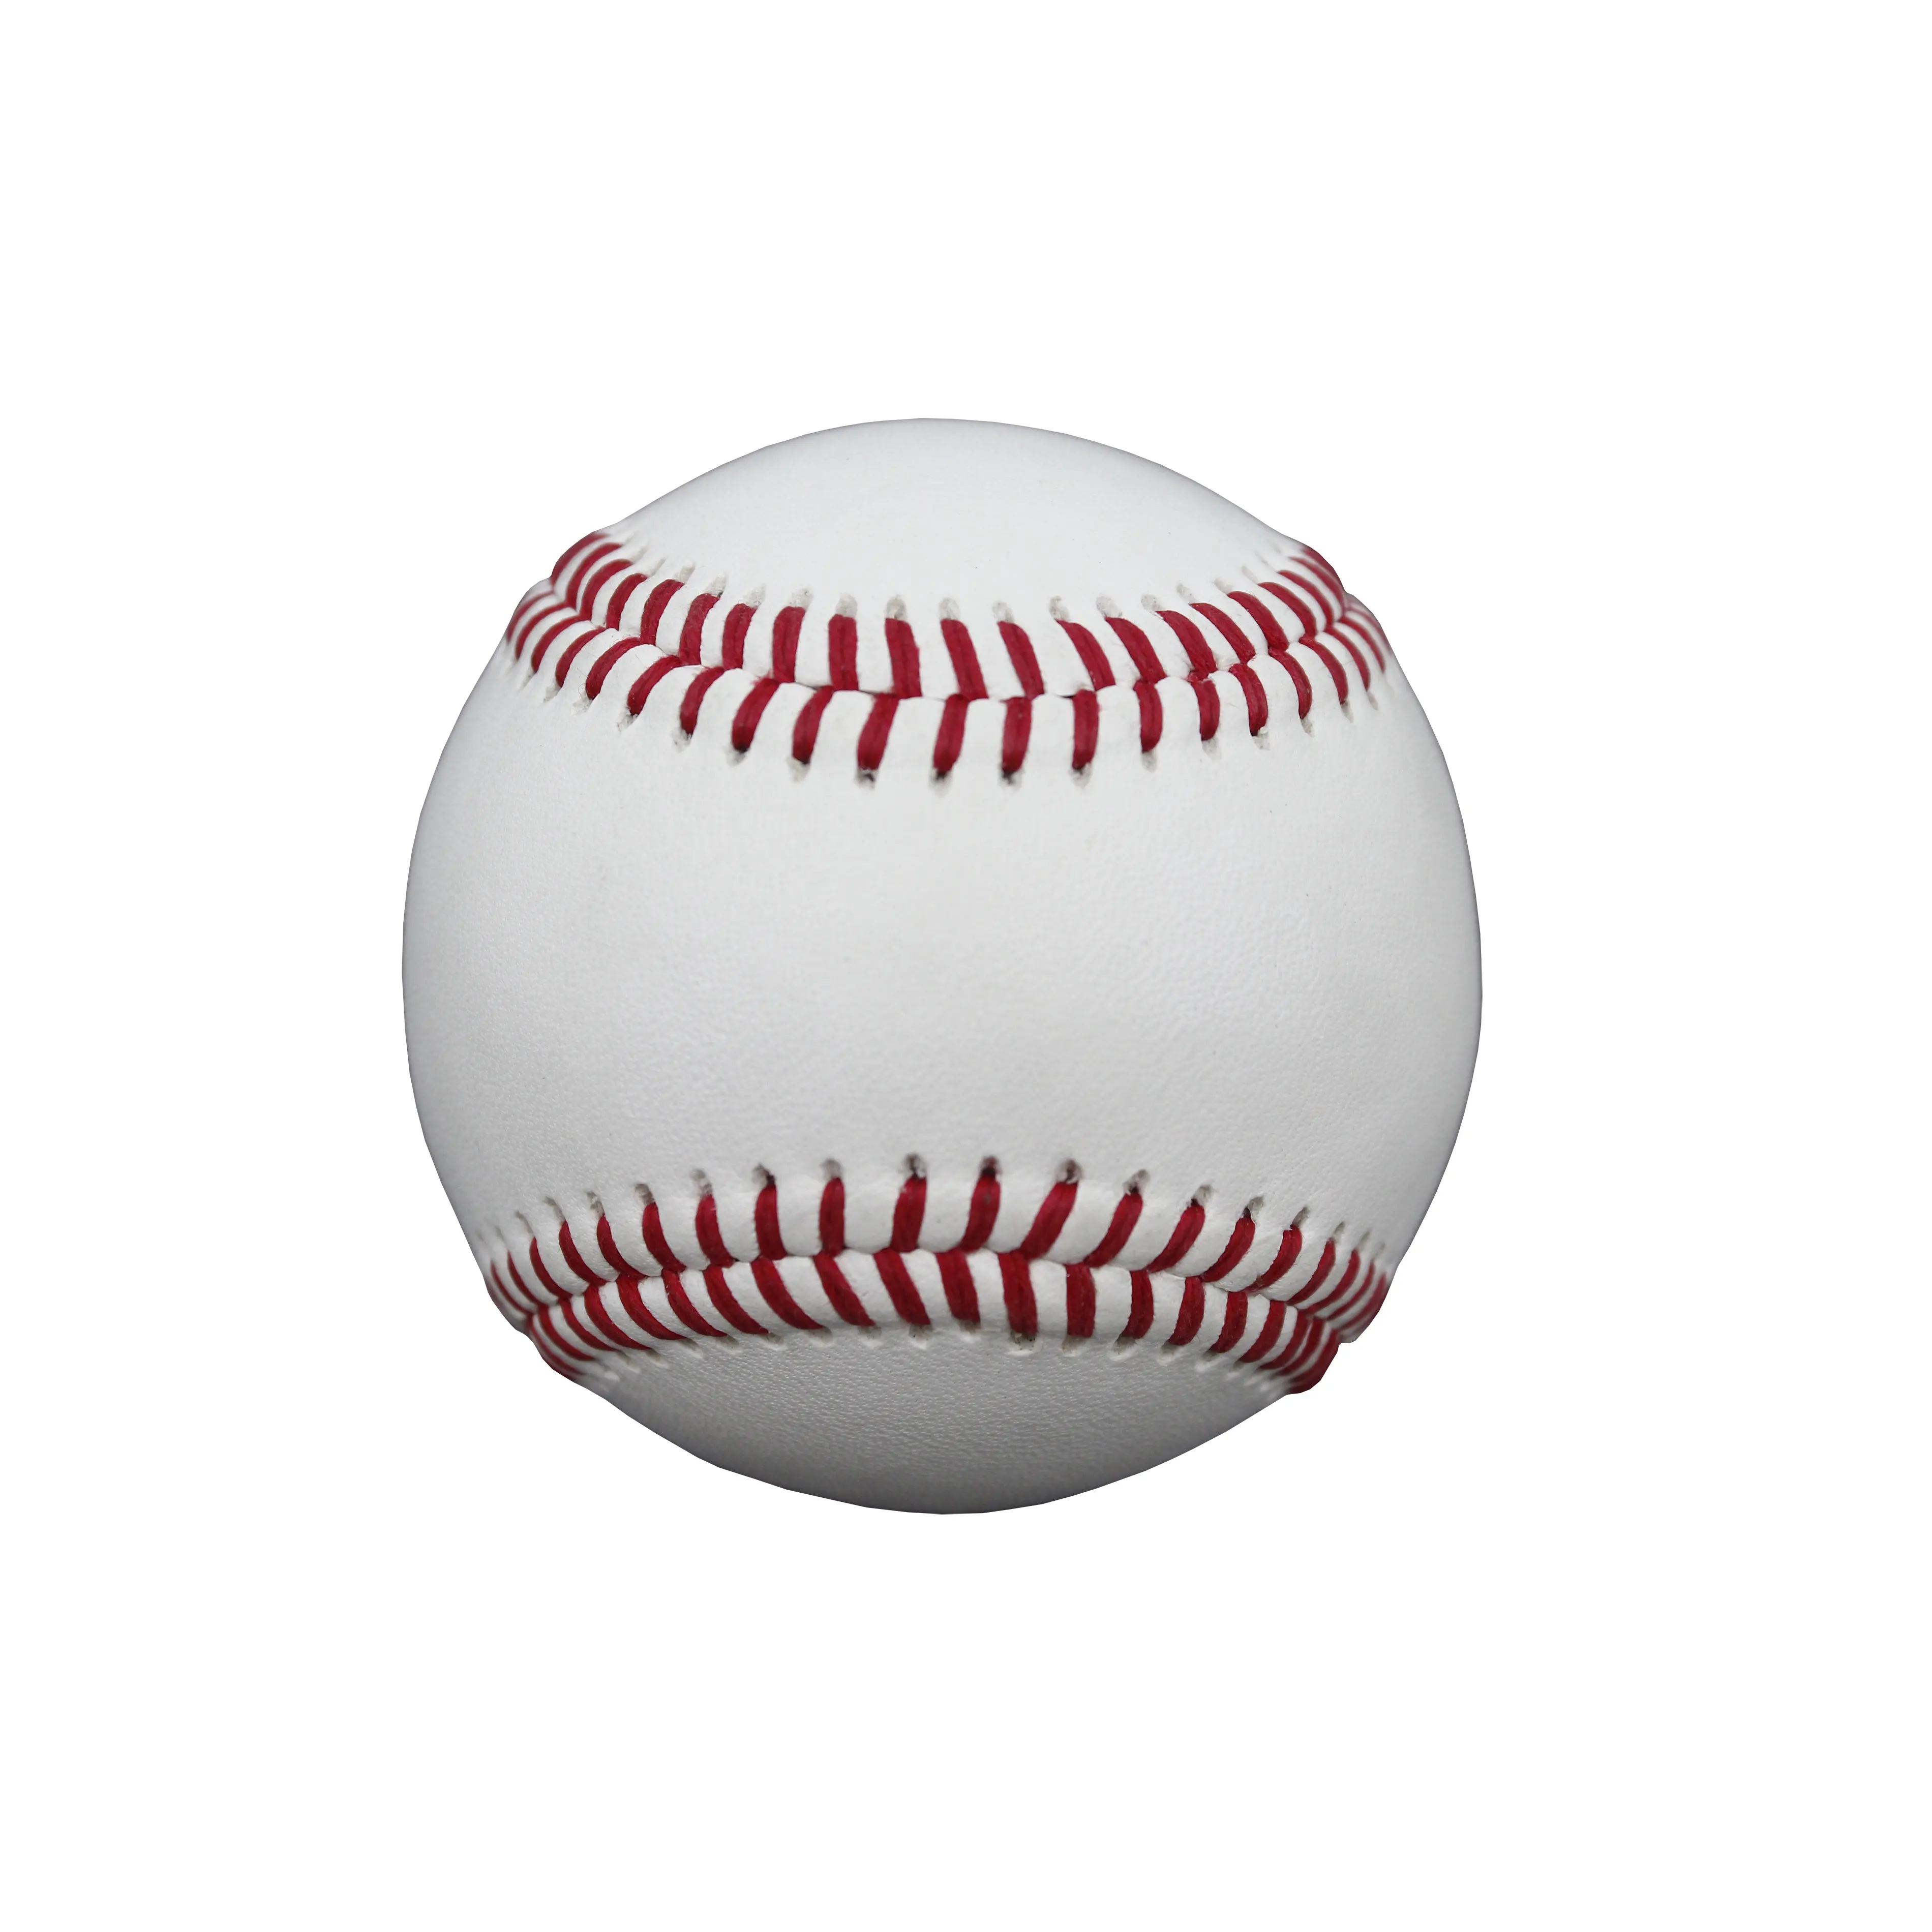 Prix d'usine Official League Leather Game Baseballs 9 pouces 5 Oz pour la compétition